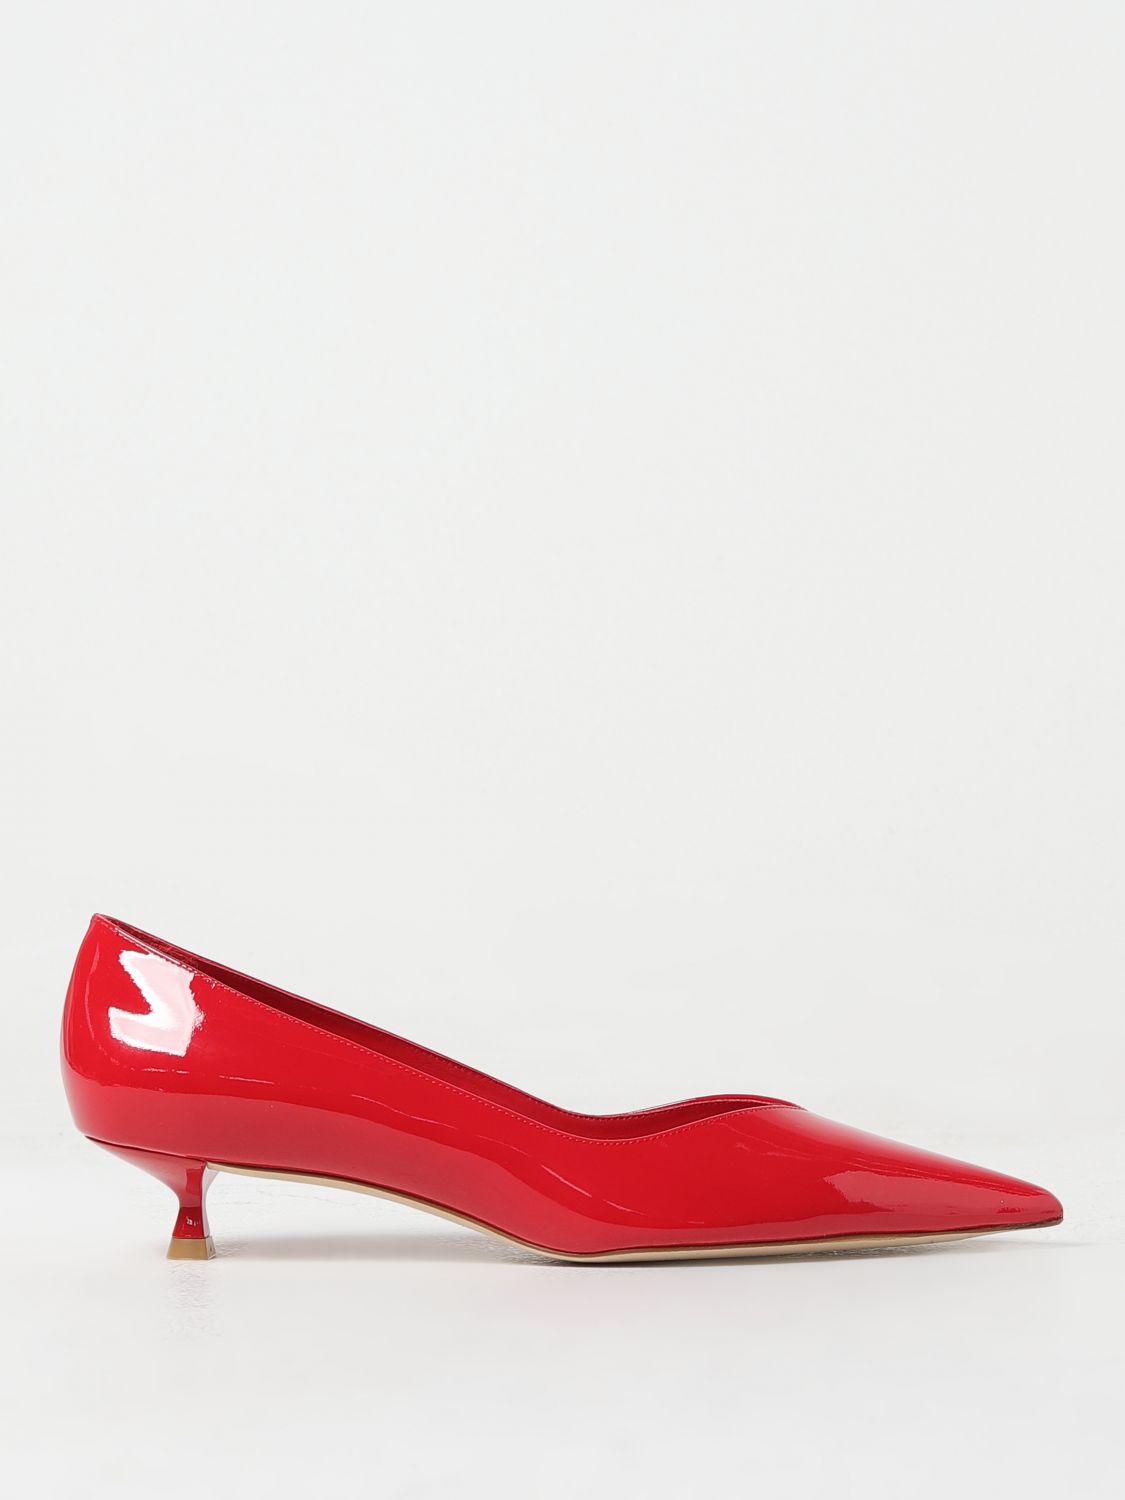 Stuart Weitzman Shoes  Woman Colour Red